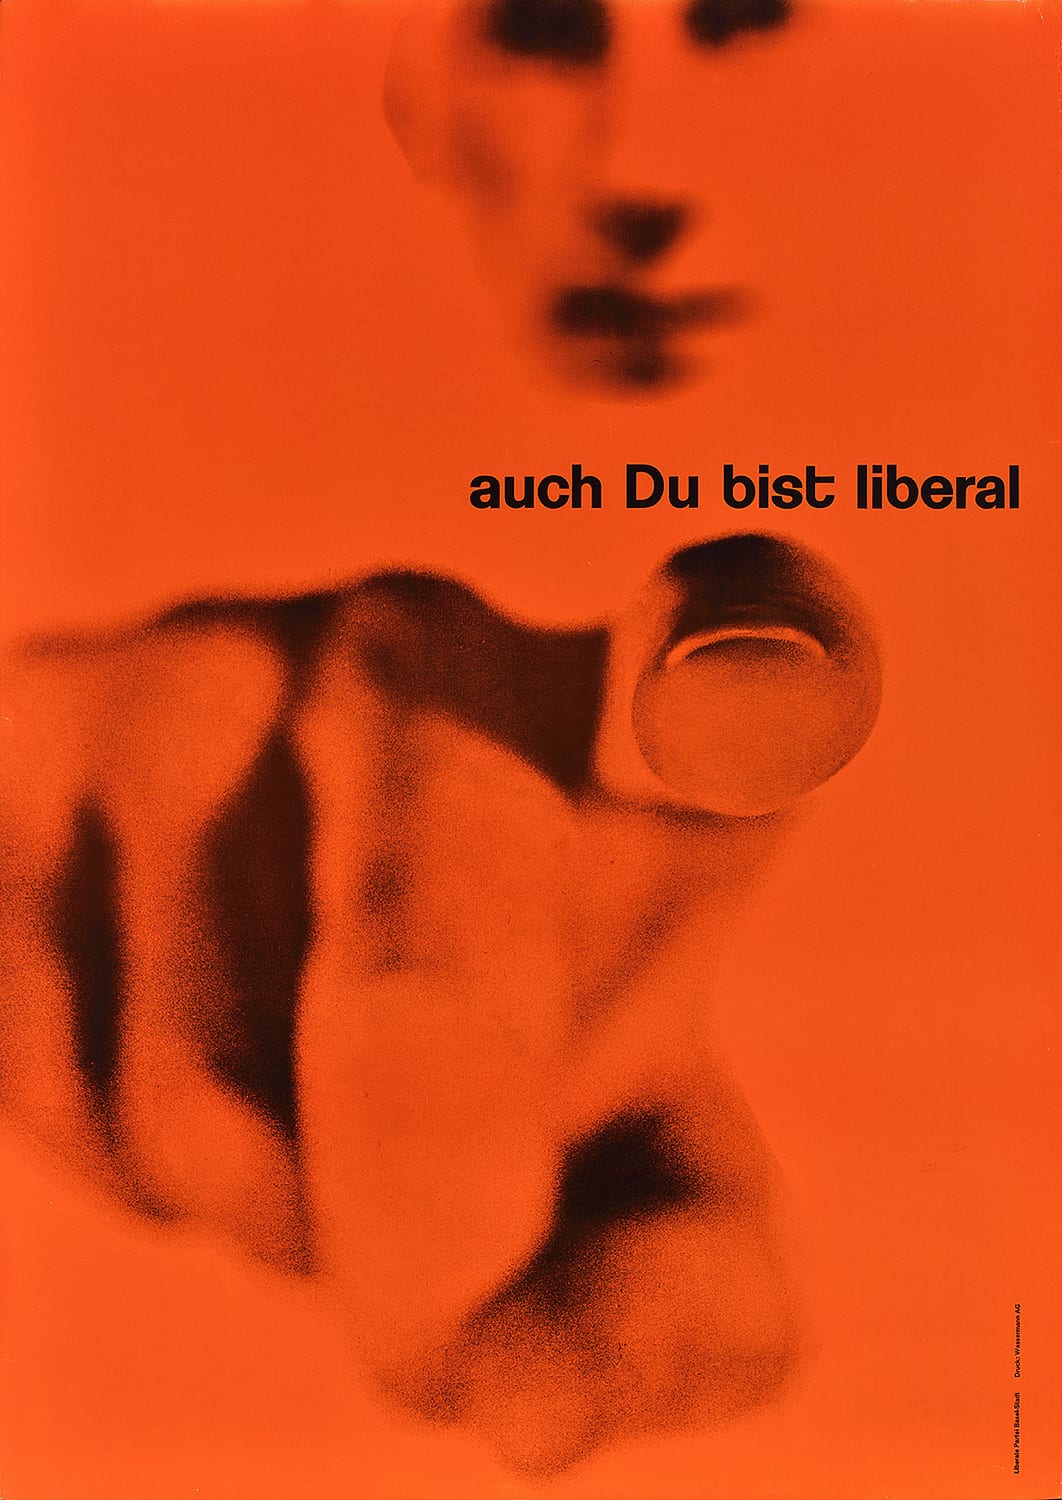 The Liberal Party Basel. Poster. Designer: Karl Gerstner